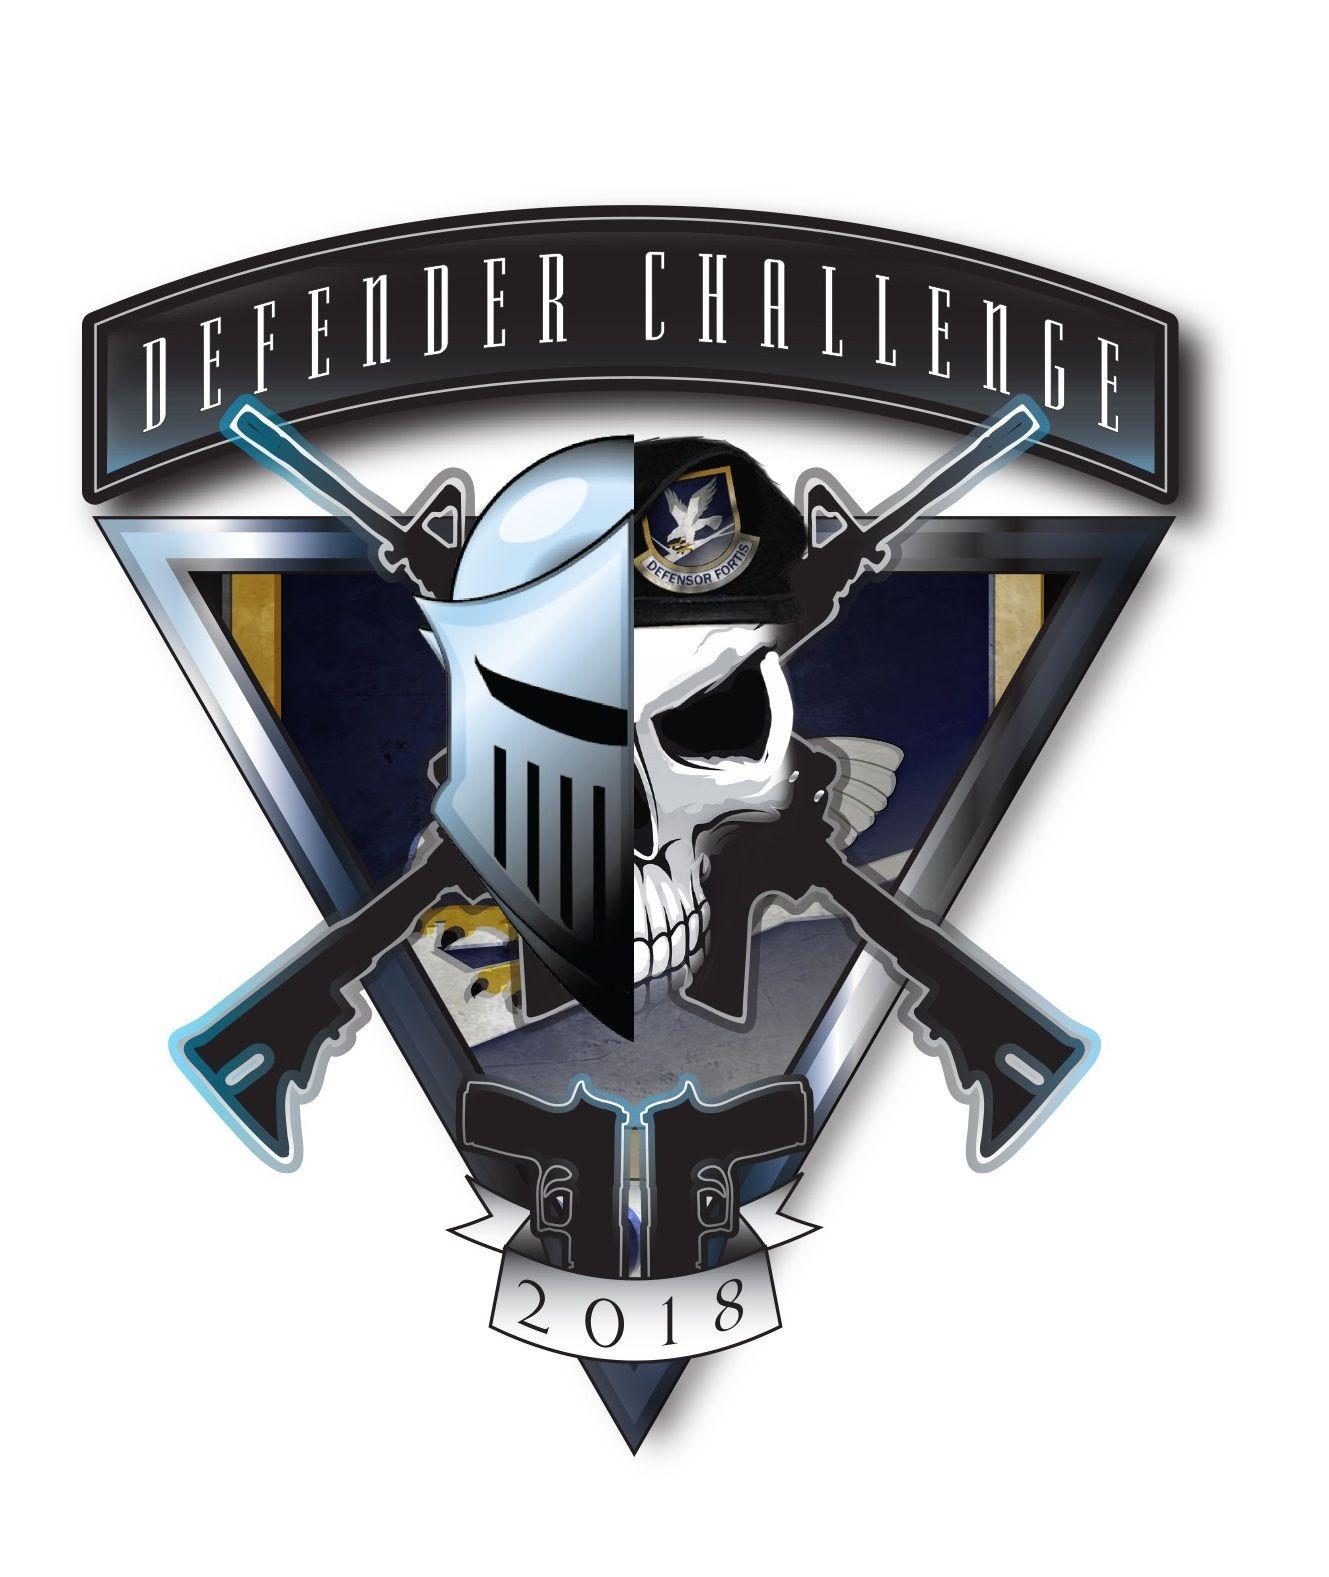 Defender Logo - Teams prepare for return of Defender Challenge > AFIMSC > News Article